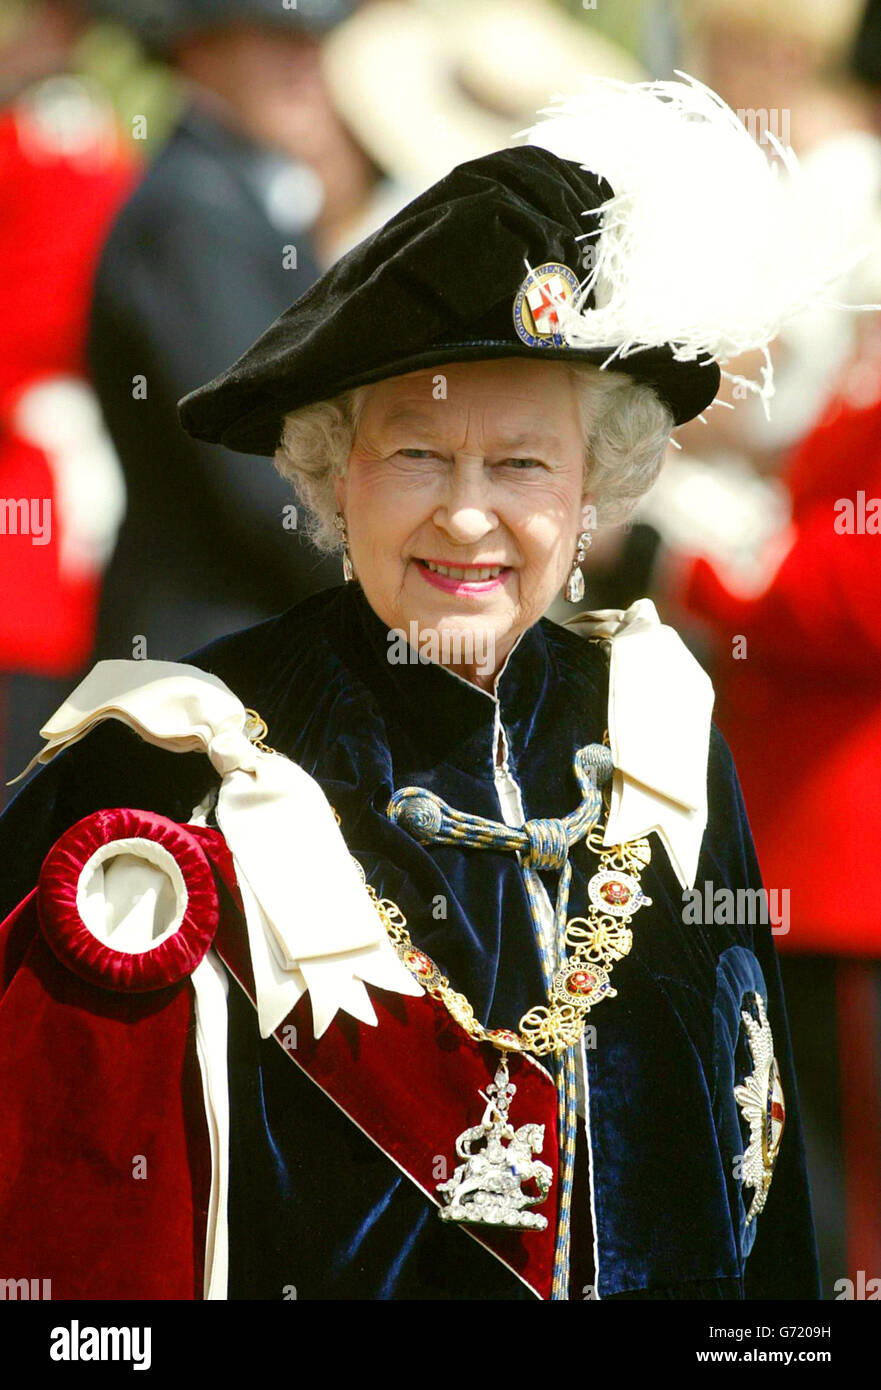 La regina Elisabetta II cammina attraverso i giardini del castello di Windsor, Berkshire, sulla sua strada per la cerimonia annuale dell'Ordine del Garter, in una carrozza a cielo aperto. Foto Stock